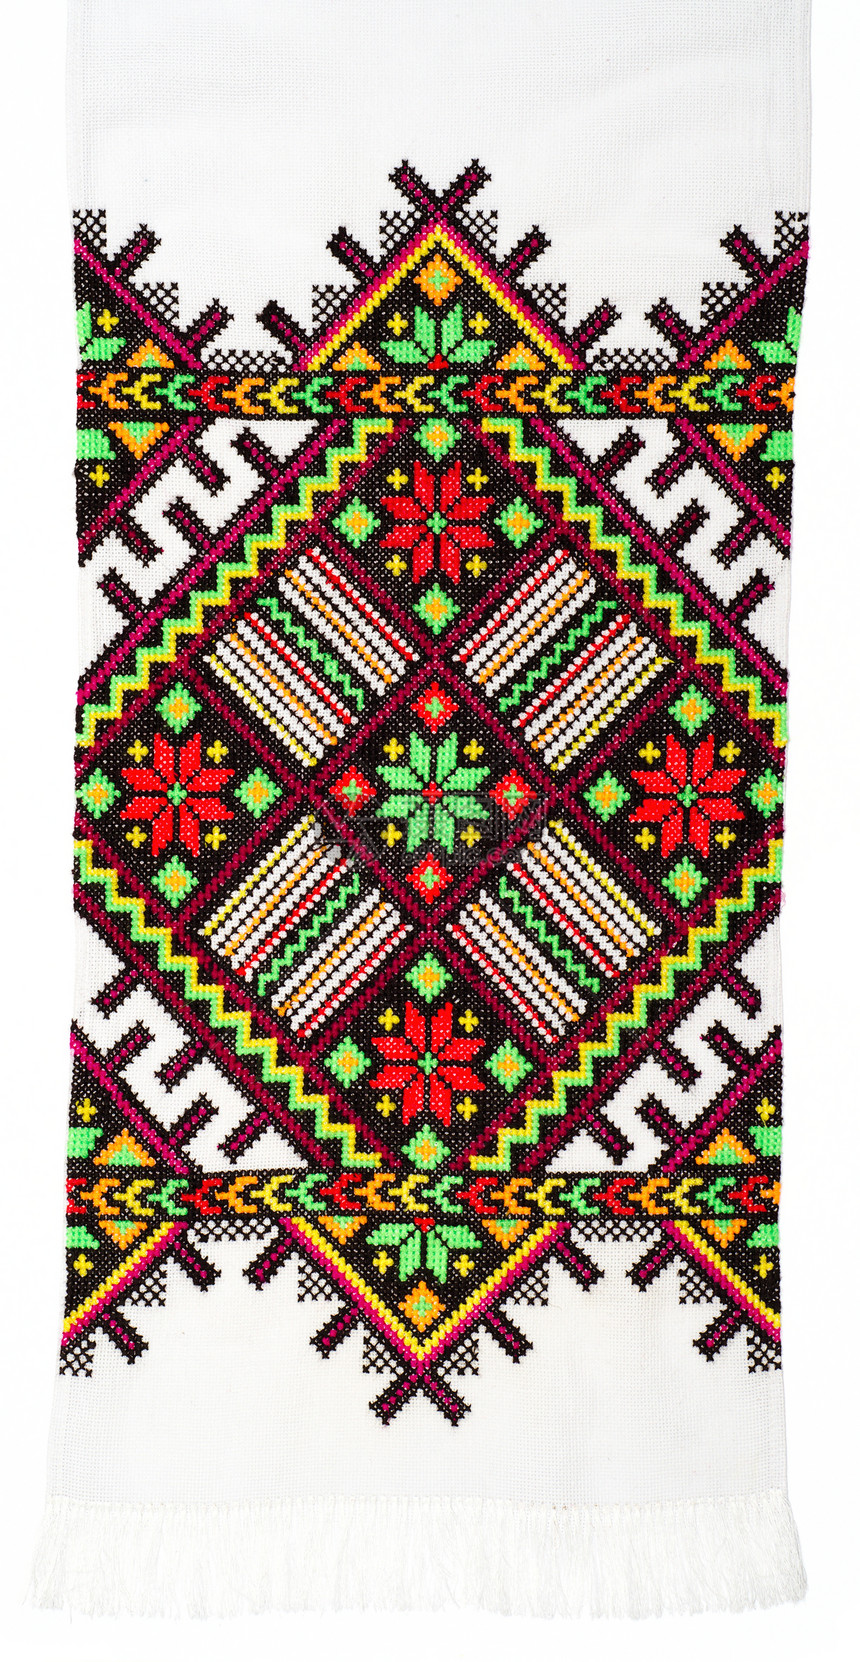 以交叉丝缝模式手工制作的刺绣帆布纤维织物材料针脚纺织品风格餐巾纸创造力针织图片